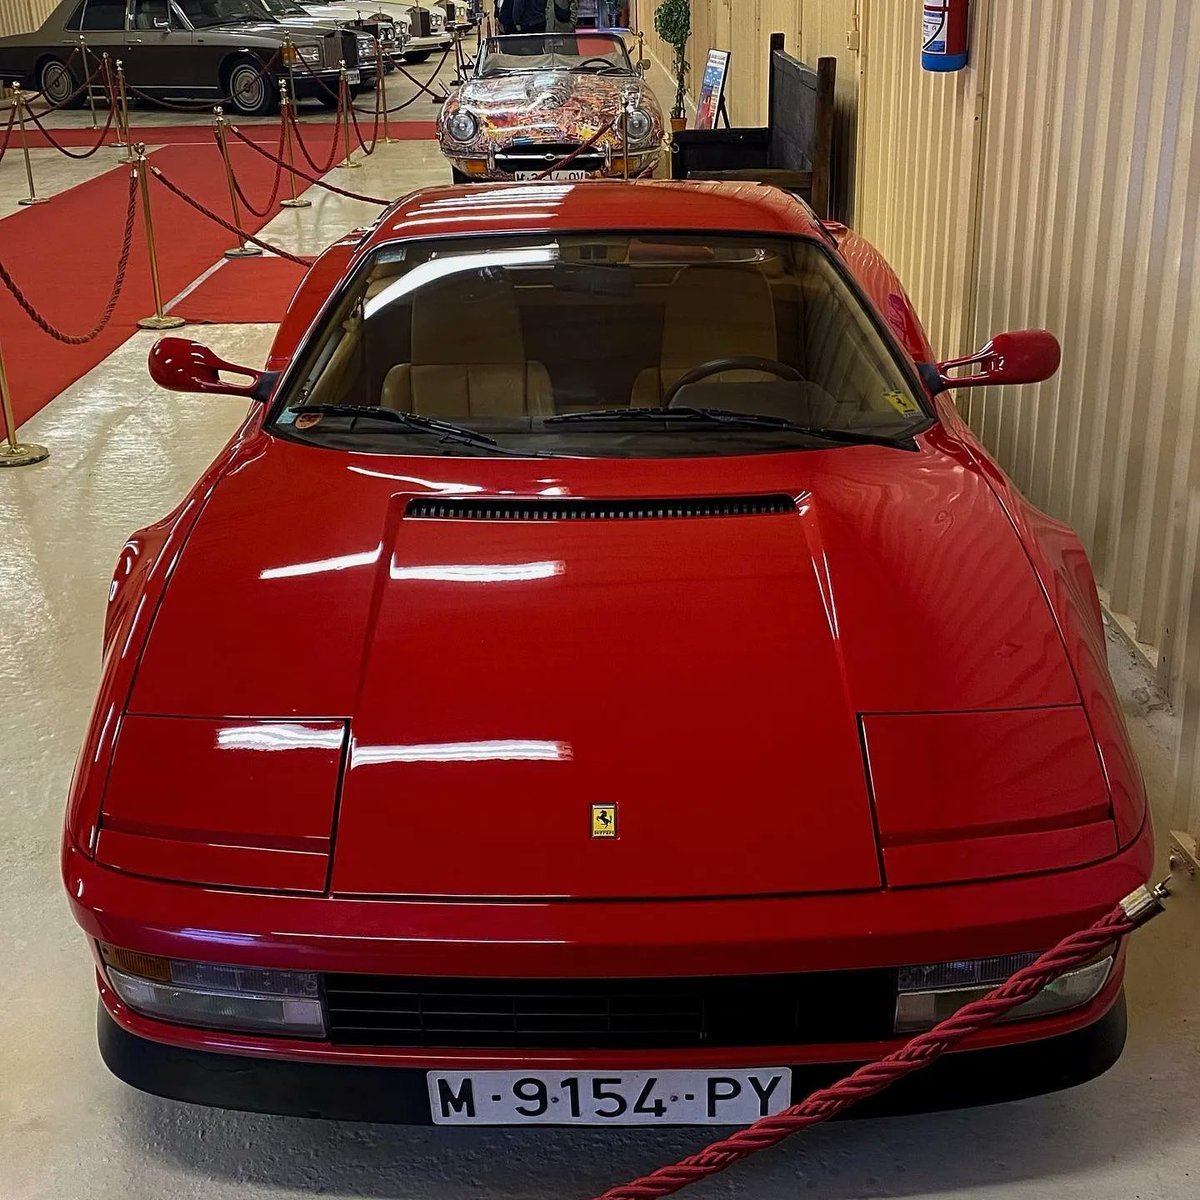 Aquí os enseñamos nuestro #Ferrari Testarossa de 1985. ¿Sabías que el famoso emblema tiene un origen ligado a la guerra de 1914? Rediseñado por Ferrari en señal de luto, hoy existen dos versiones diferenciadas por su forma y ubicación: una para calle y otra para competición.